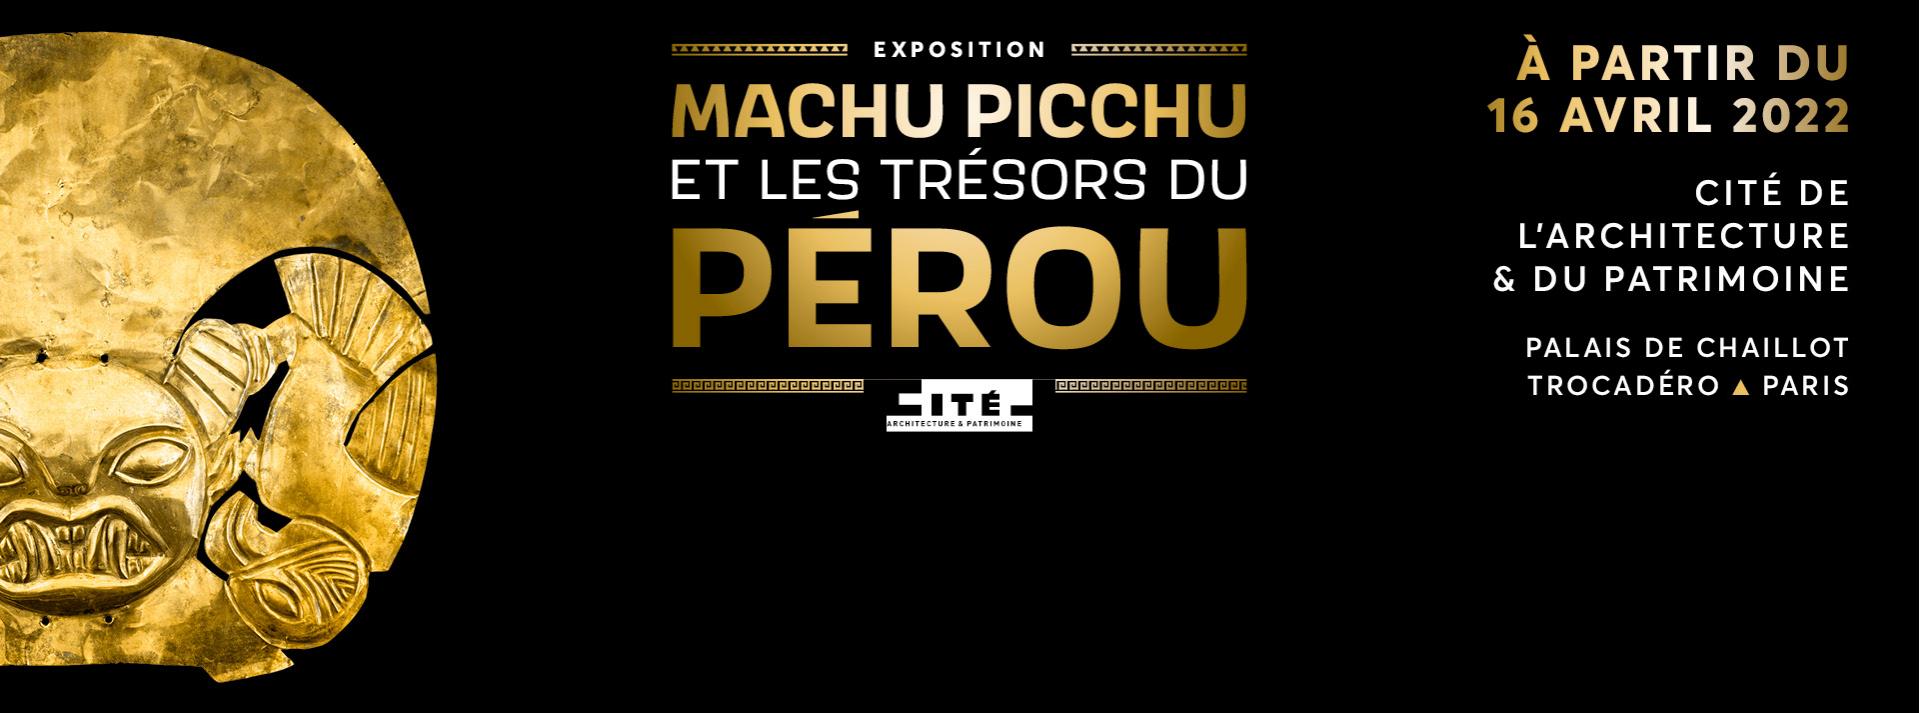 Machu Picchu exhibition Paris 2022